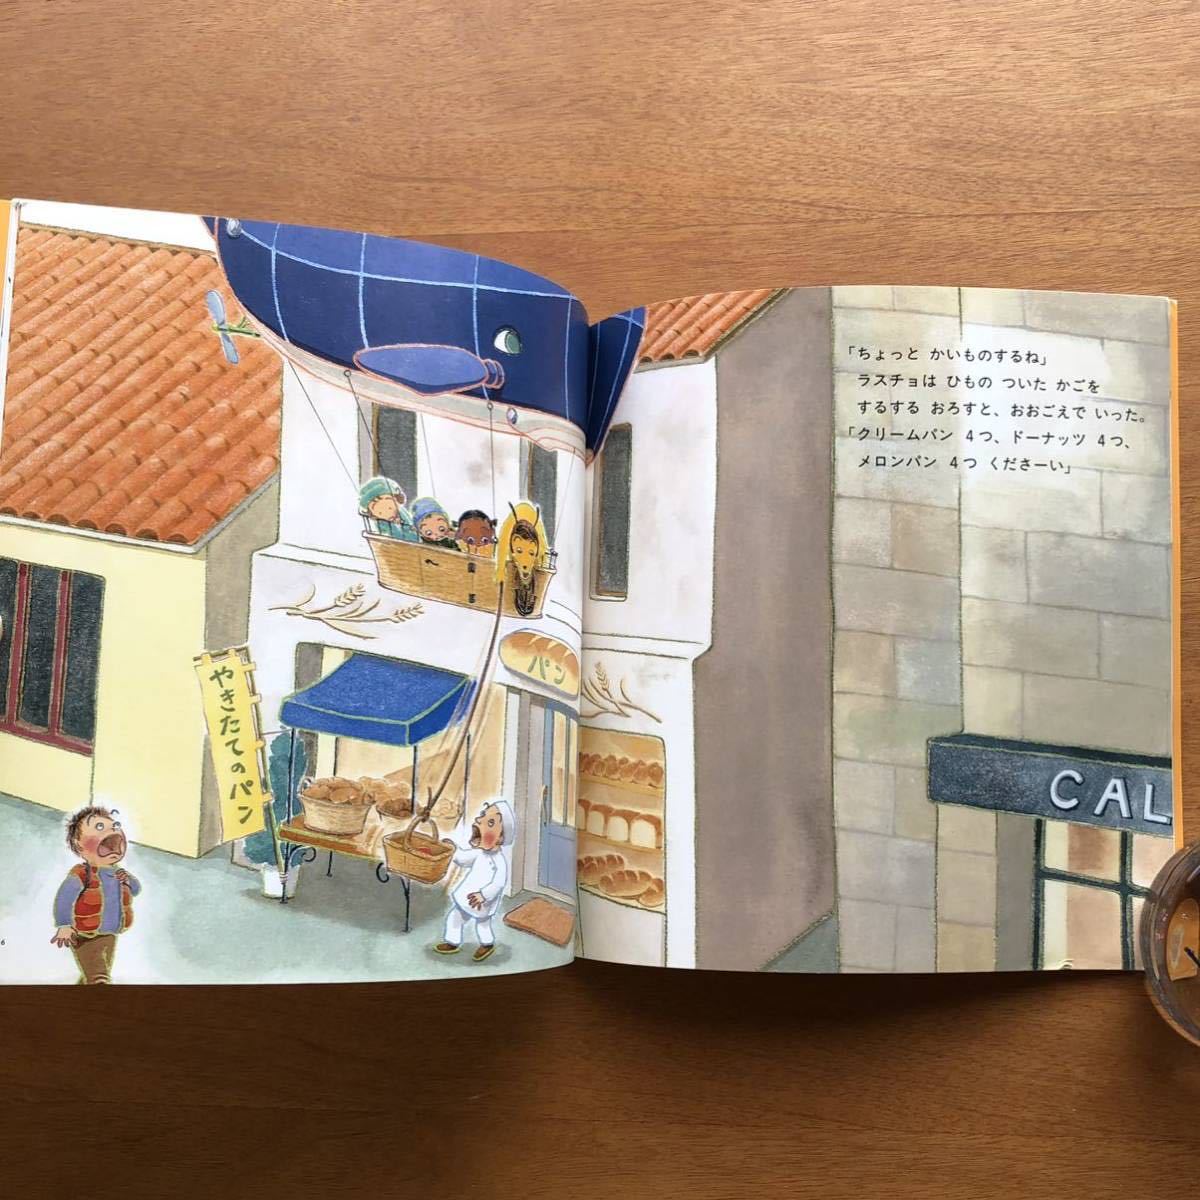 こどものとも　年少版　ラスチョのひこうせん　アンヴィル奈宝子　２００６年　初版　絶版　犬　飛行船　絵本　児童書　昭和レトロ